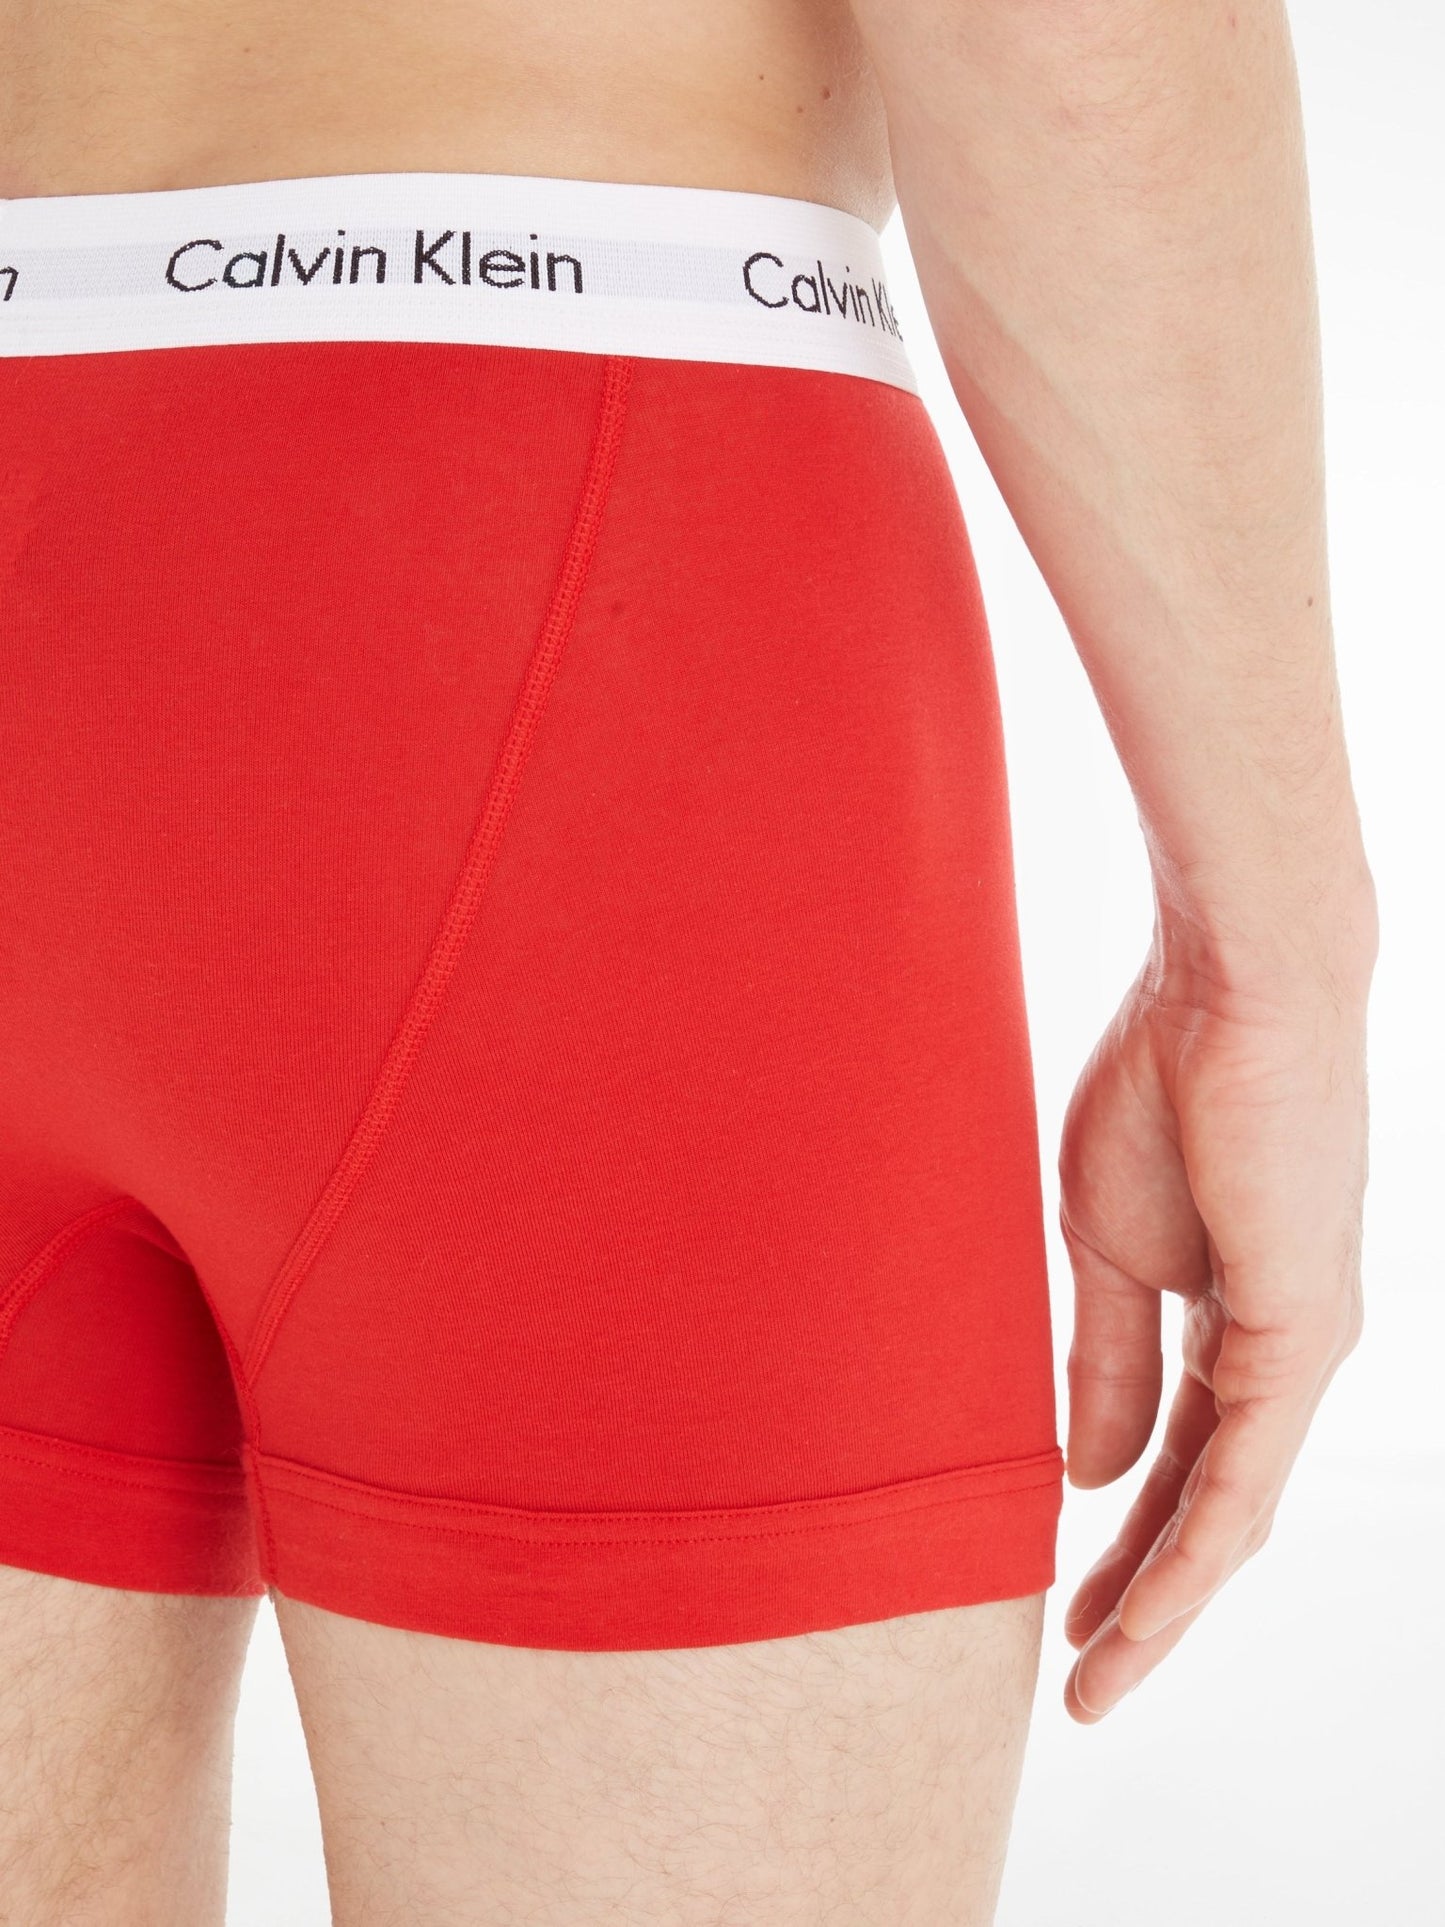 Calvin Klein 3 Pack Trunks - Matt O'Brien Fashions